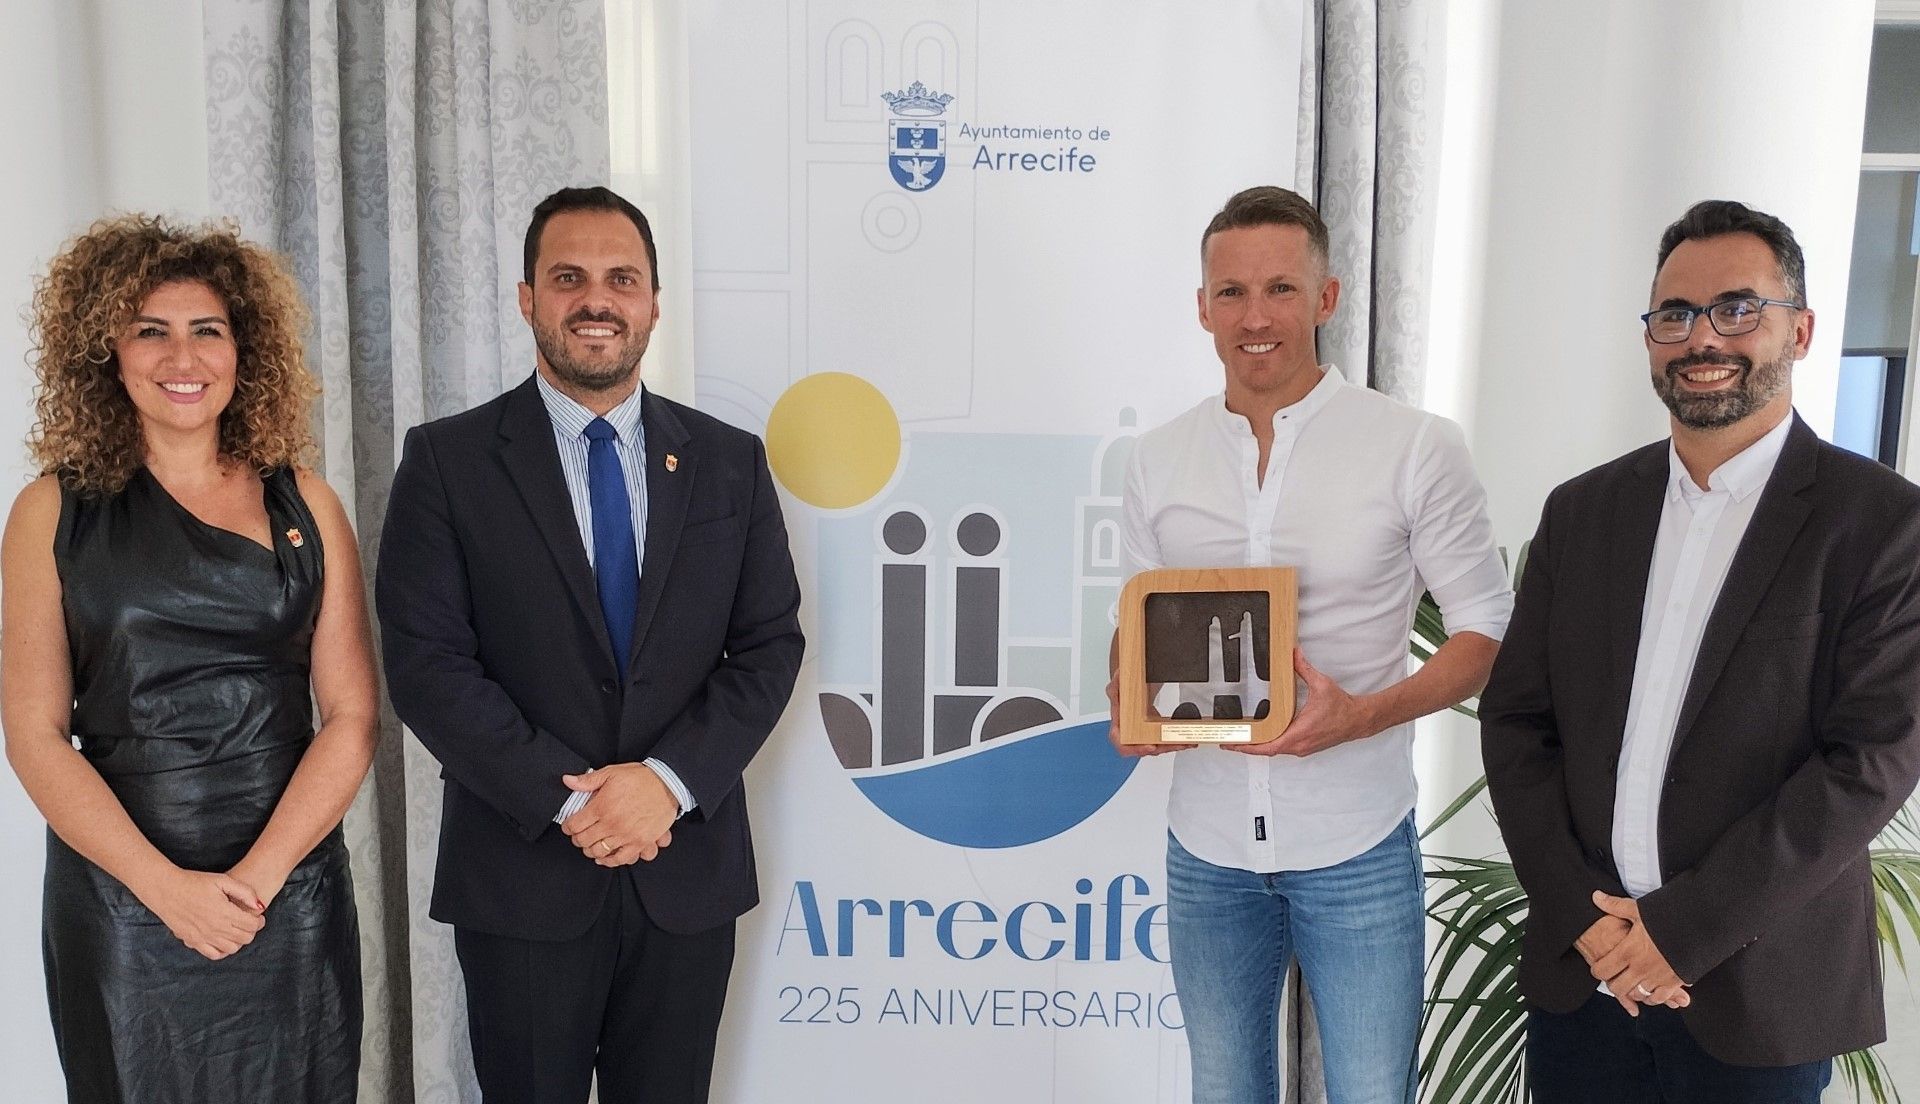 El árbitro internacional Alejandro Hernández, embajador del 225 aniversario de Arrecife